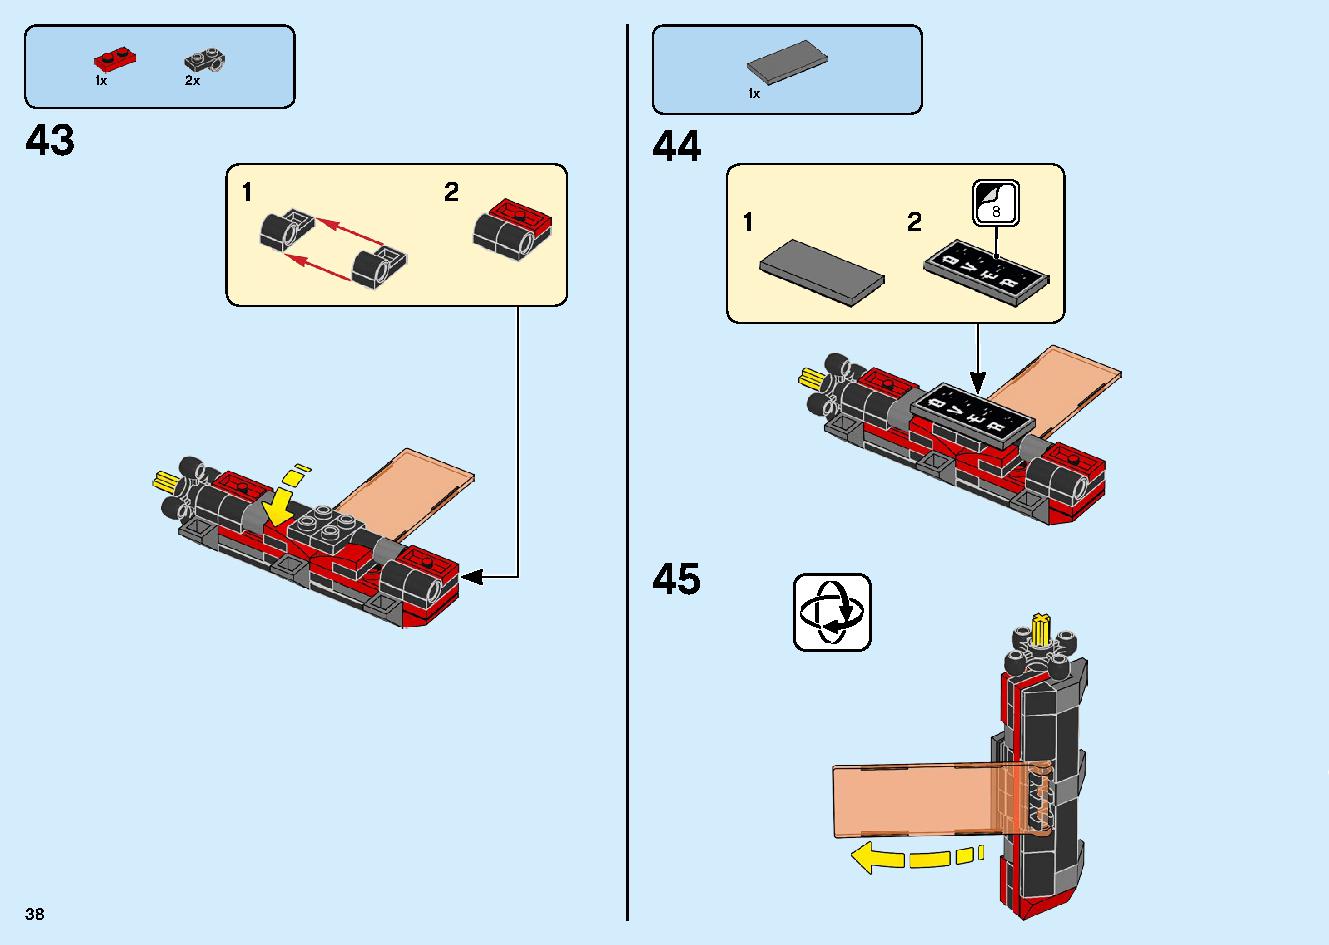 マッドキング神殿 71712 レゴの商品情報 レゴの説明書・組立方法 38 page